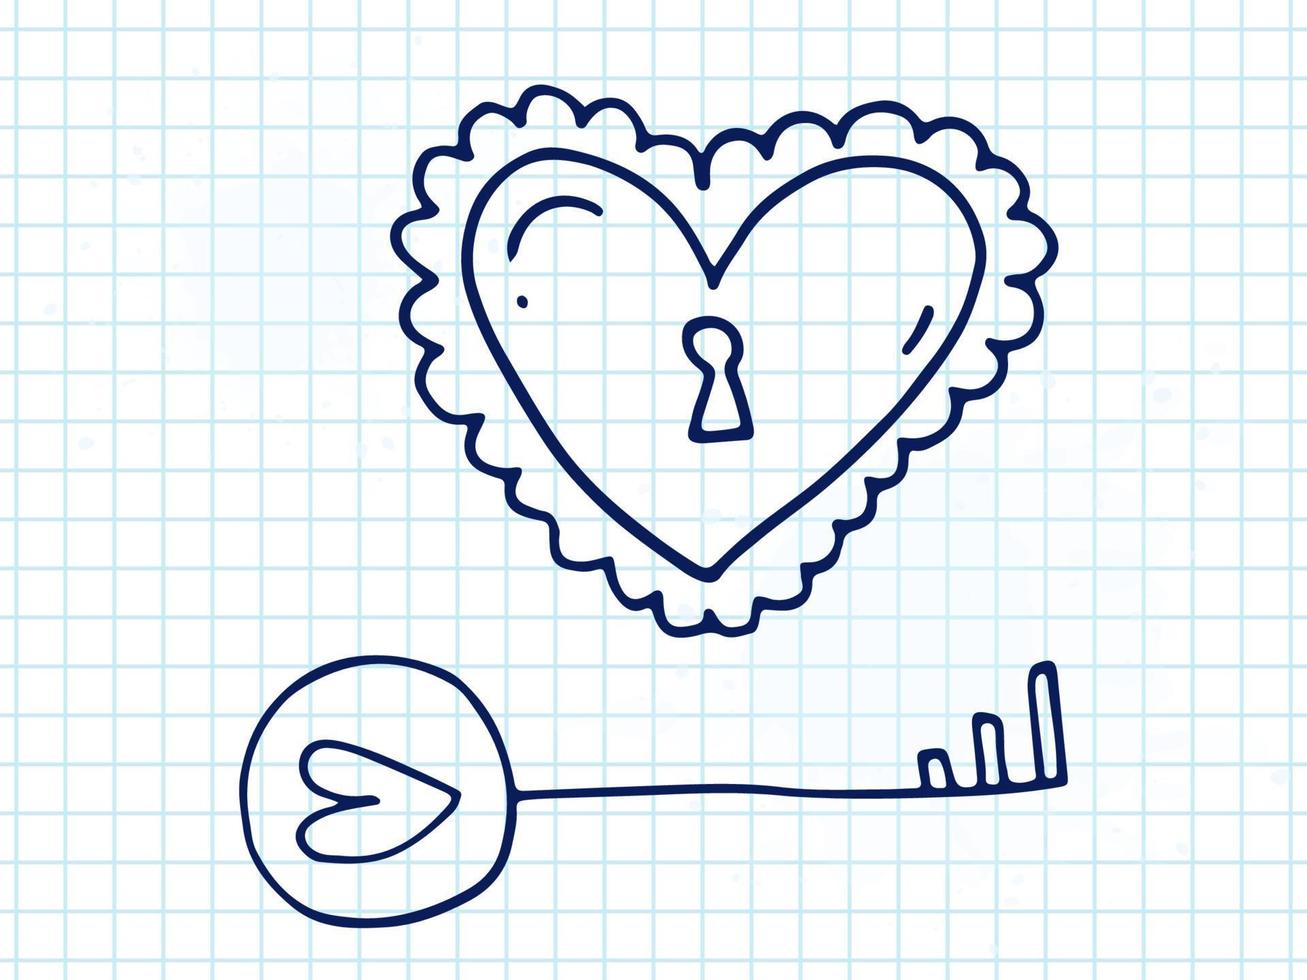 conjunto de elementos de doodle bonitos desenhados à mão sobre o amor. adesivos de mensagem para aplicativos. ícones para dia dos namorados, eventos românticos e casamento. um caderno quadriculado. fechaduras e chaves em forma de coração. vetor